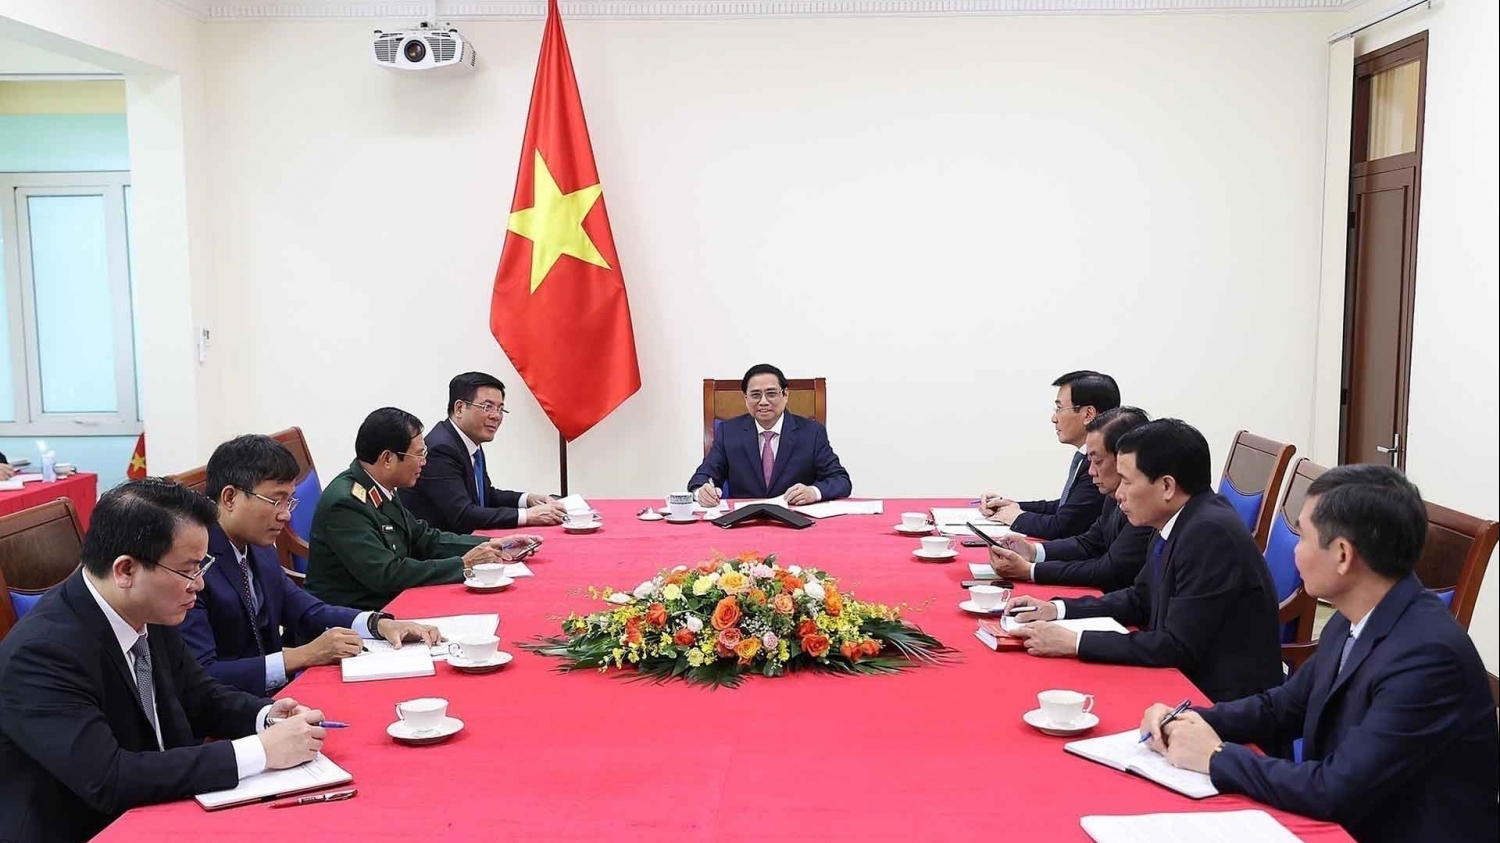 Thủ tướng Phạm Minh Chính điện đàm với Thủ tướng Trung Quốc Lý Khắc Cường